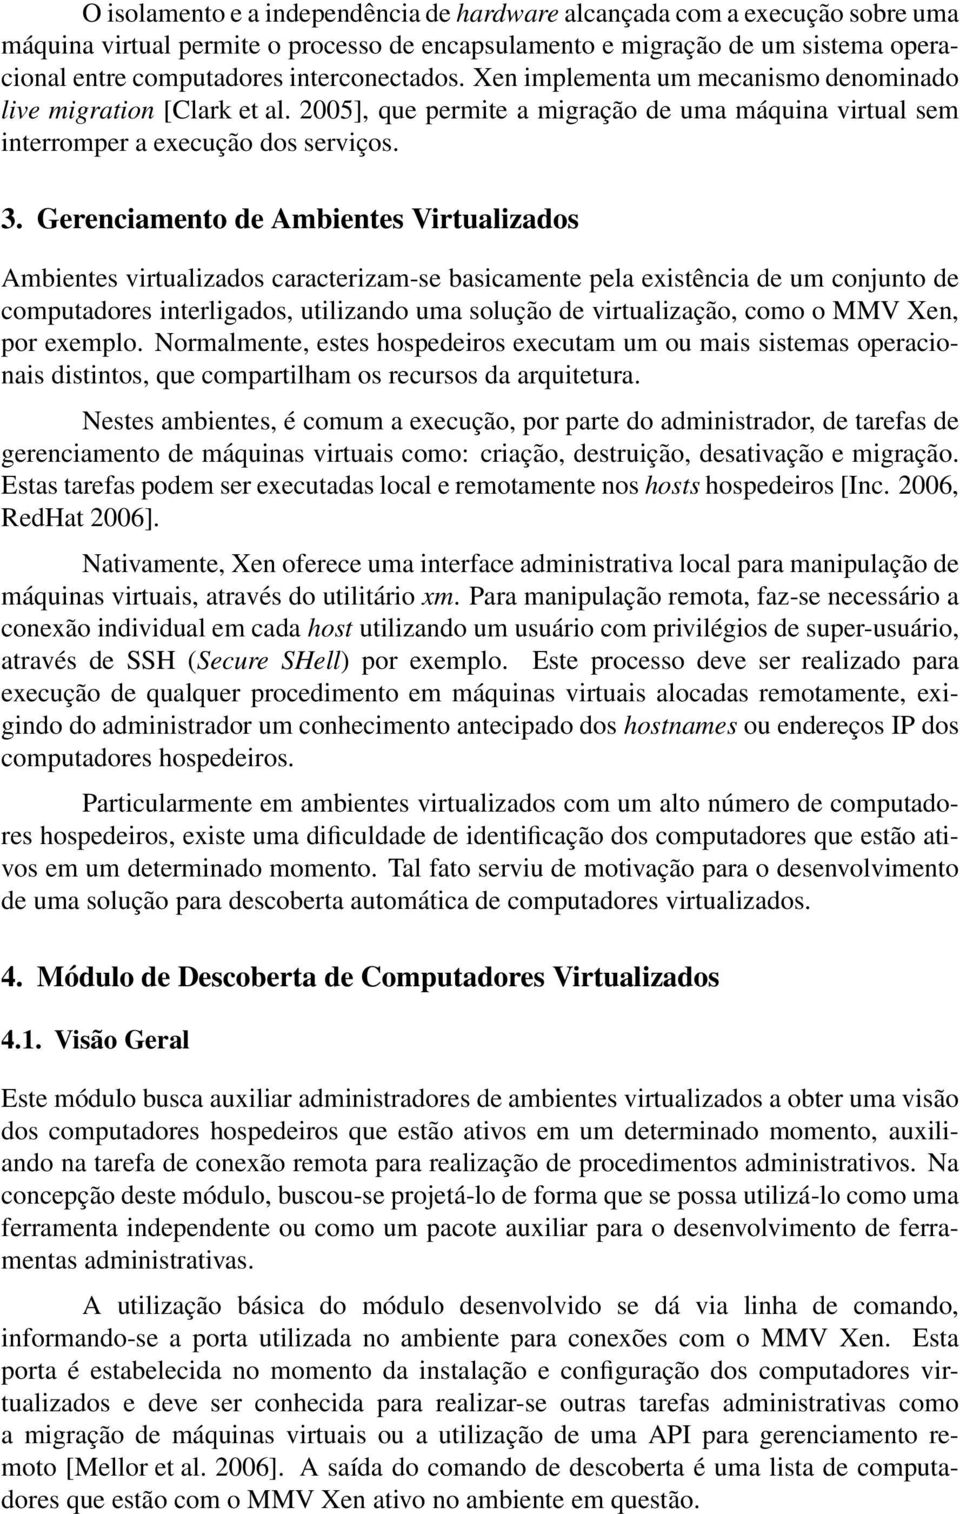 Gerenciamento de Ambientes Virtualizados Ambientes virtualizados caracterizam-se basicamente pela existência de um conjunto de computadores interligados, utilizando uma solução de virtualização, como